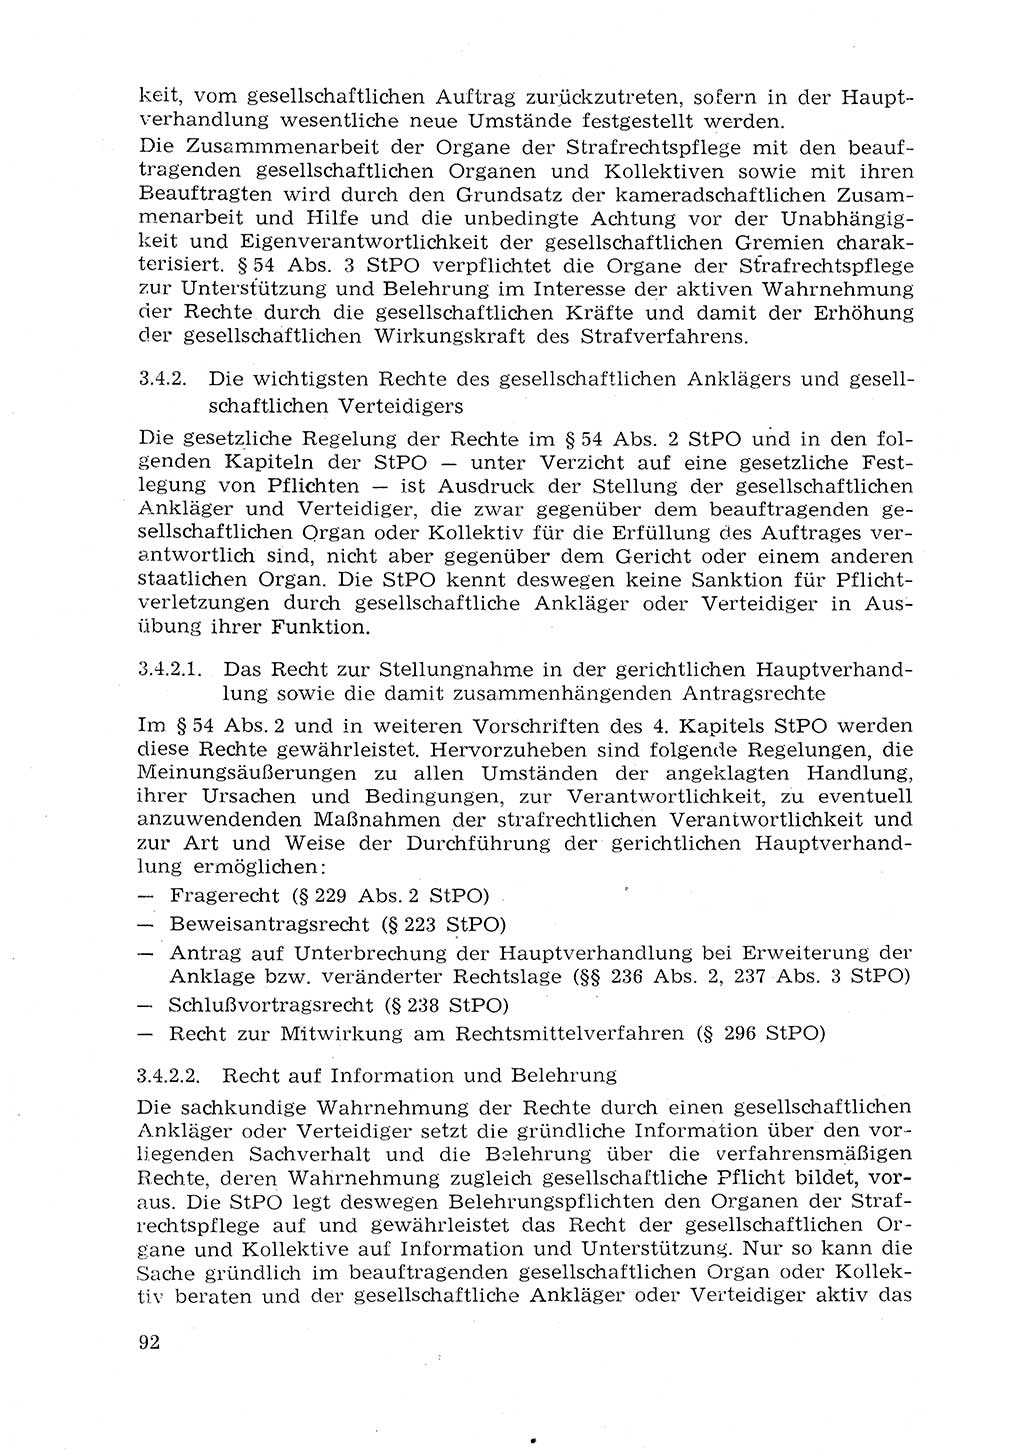 Strafprozeßrecht der DDR (Deutsche Demokratische Republik), Lehrmaterial 1969, Seite 92 (Strafprozeßr. DDR Lehrmat. 1969, S. 92)